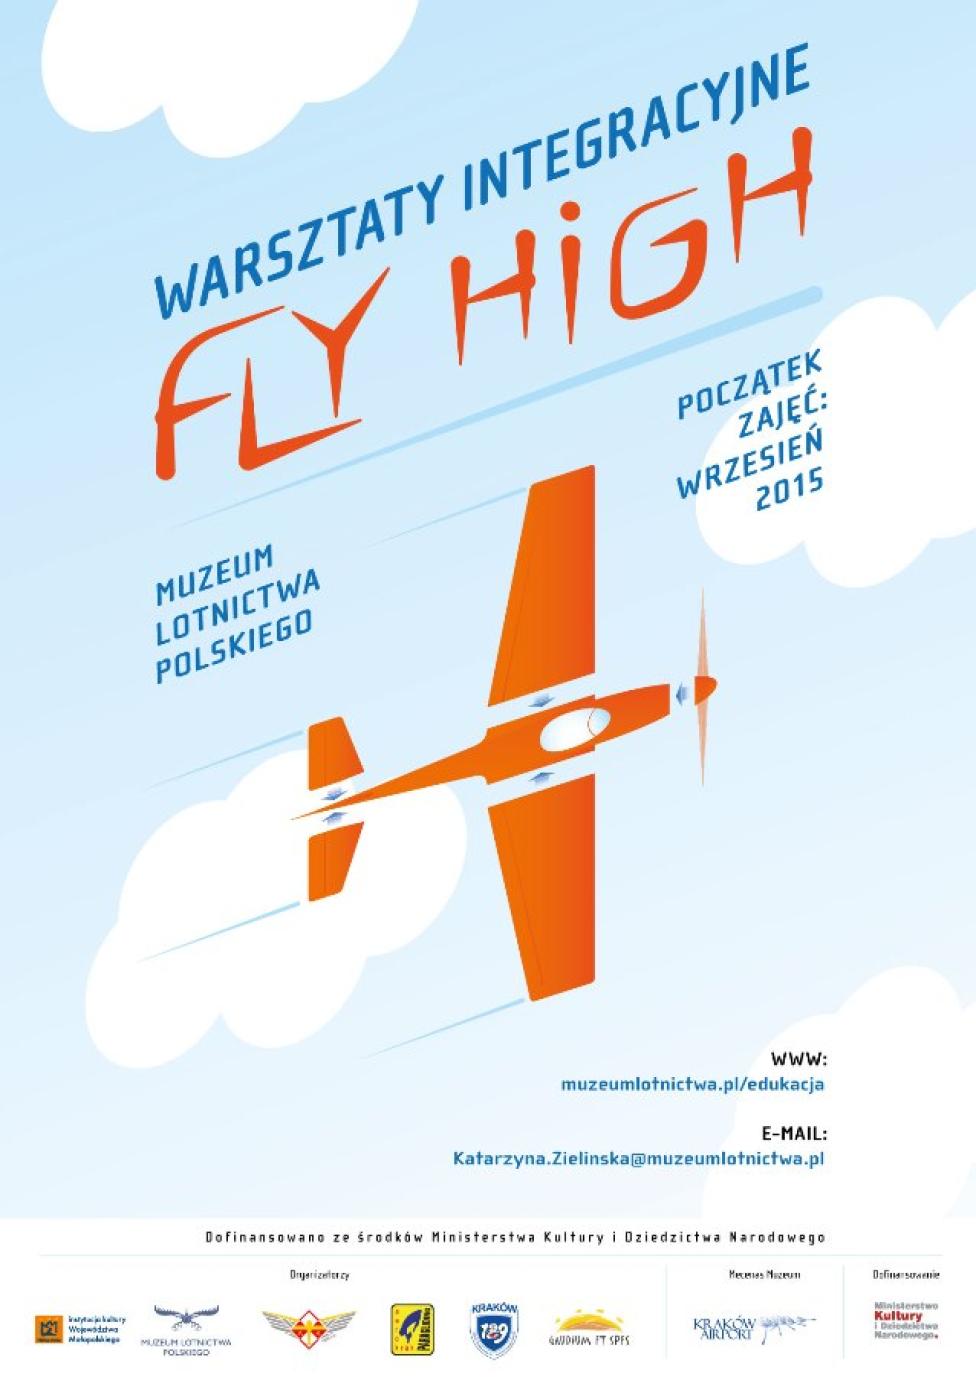 Warsztaty modelarskie FLY HIGH w Muzeum Lotnictwa Polskiego (fot. muzeumlotnictwa.pl)